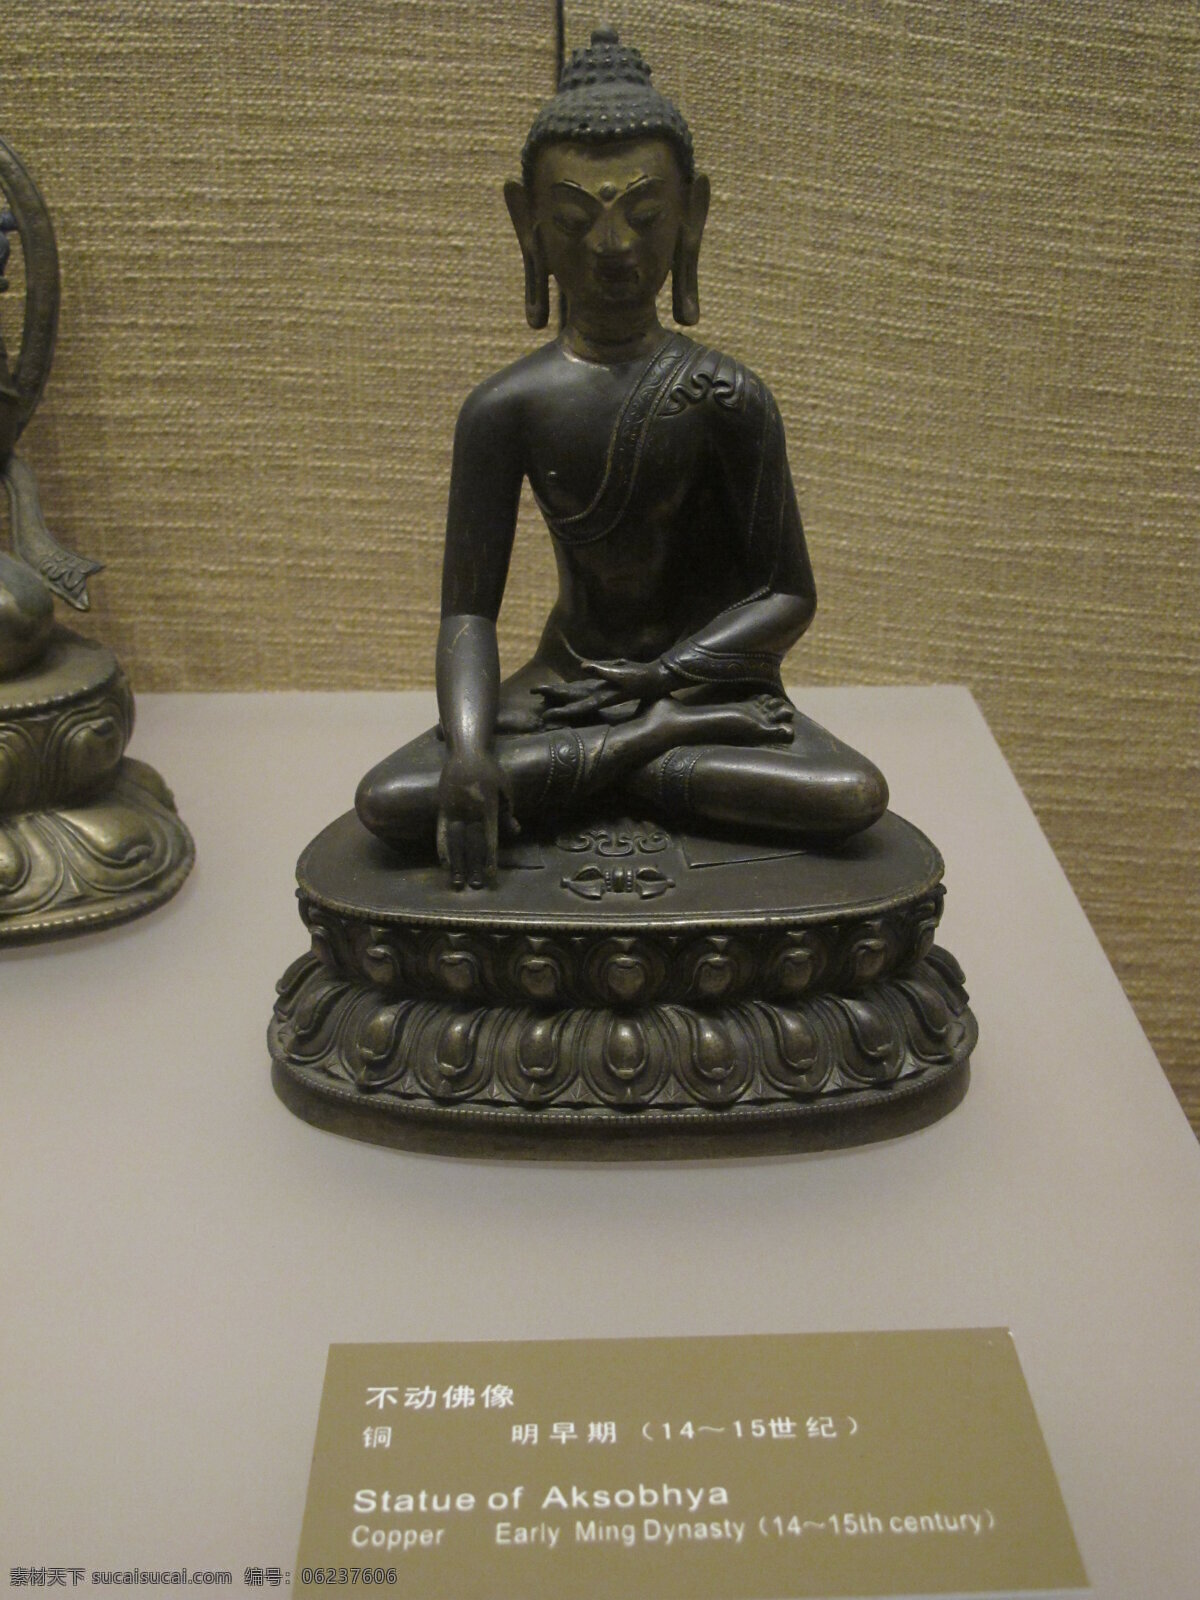 佛教 立体 菩萨 清朝 如来 唐卡 文化艺术 不动如来 密宗 铜佛像 西藏 雍和宫铜佛像 宗教信仰